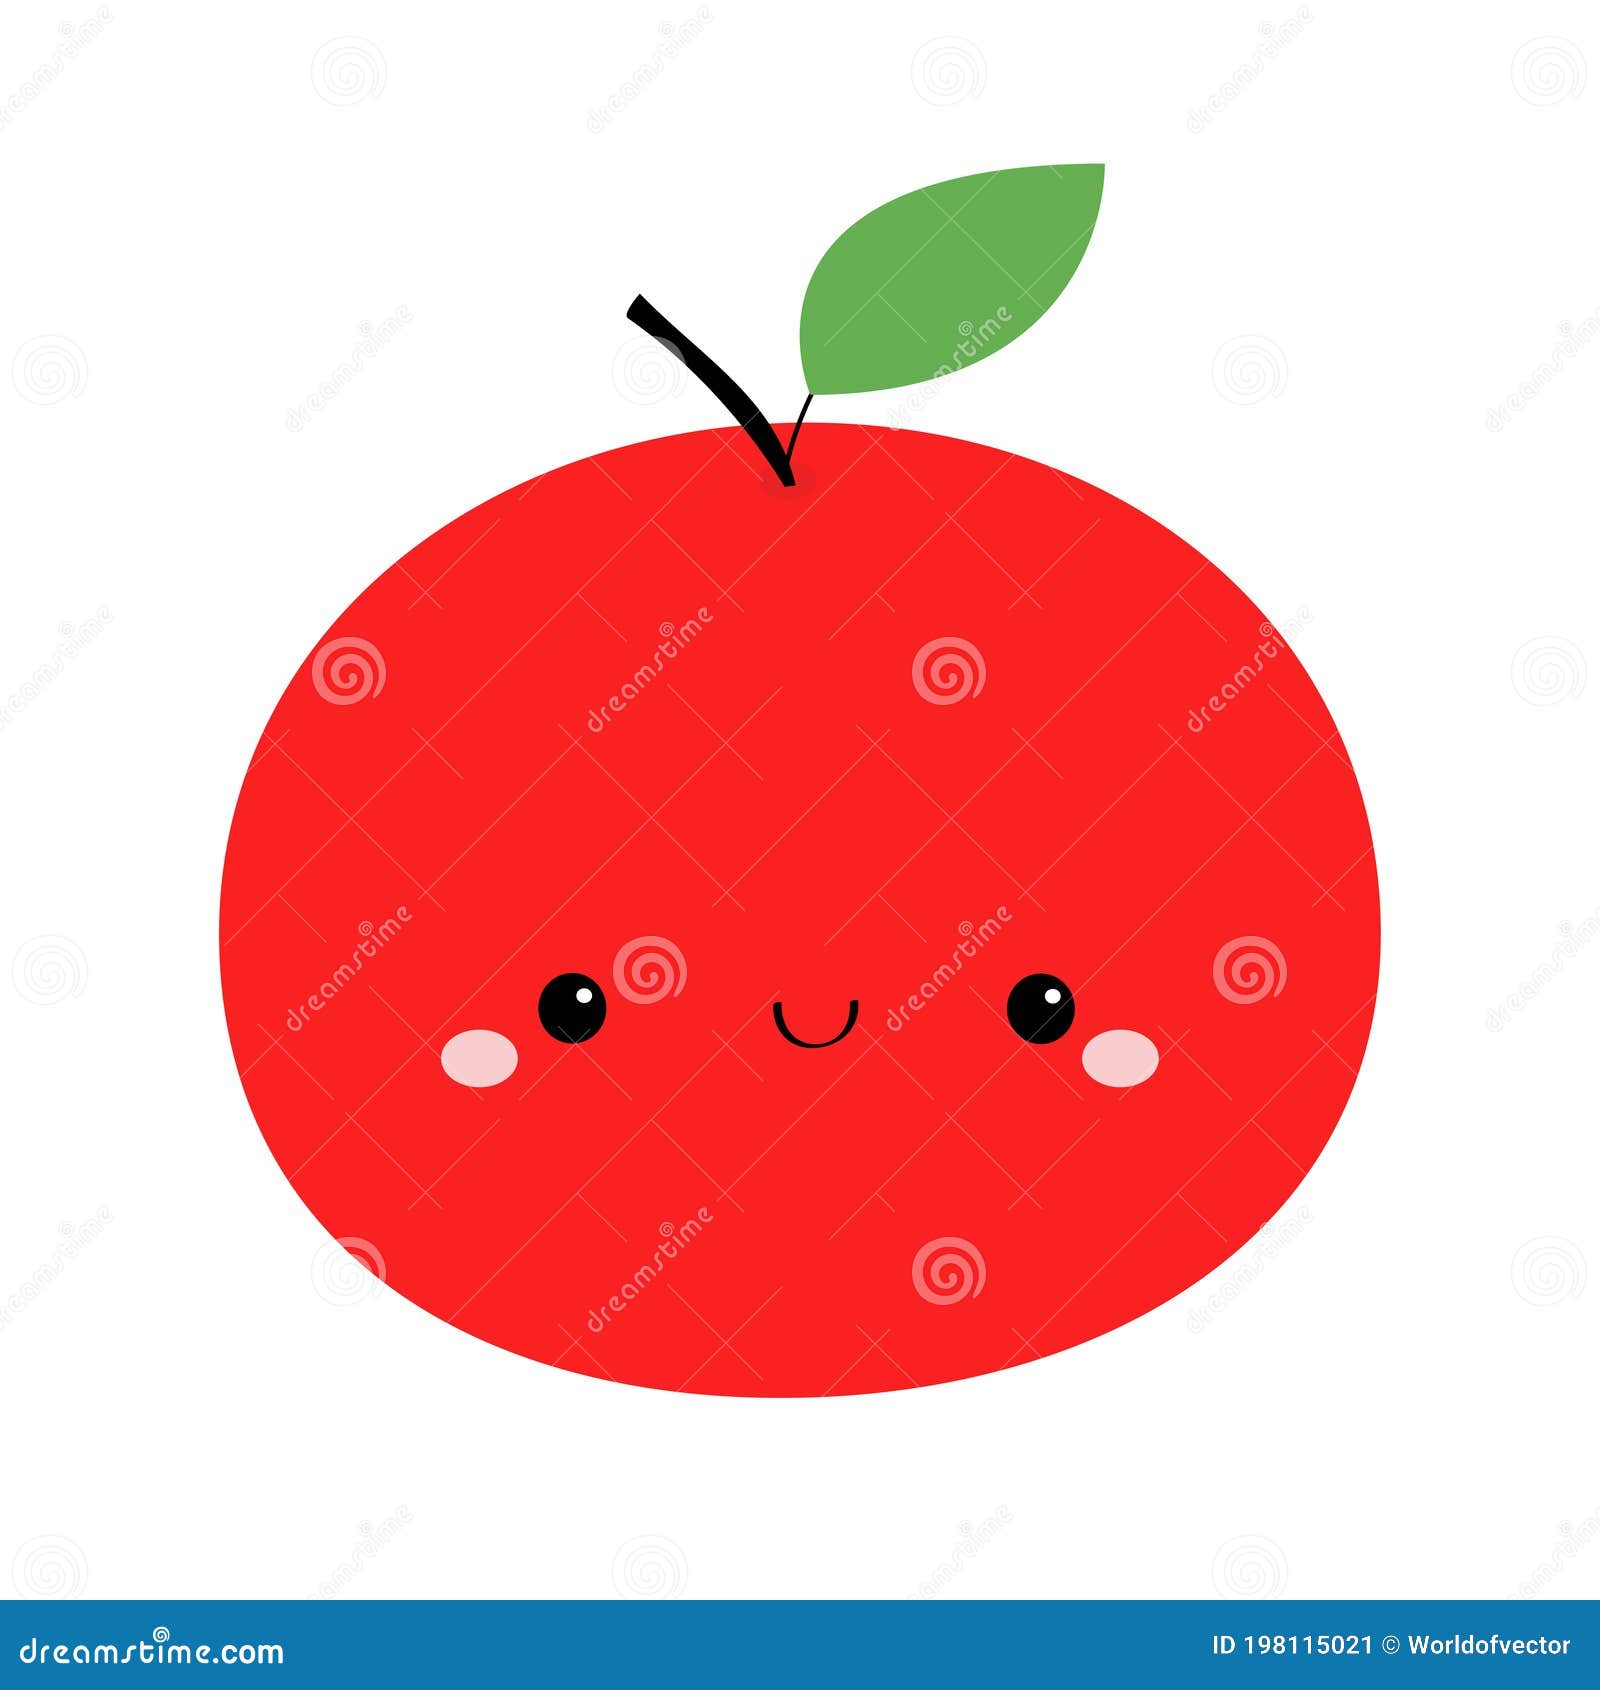 Bạn thích hoạt hình không? Hãy xem một quả táo hoạt hình vô cùng dễ thương này! Được vẽ bằng nét vẽ tươi sáng và dễ thương, quả táo hoạt hình này sẽ giúp bạn thư giãn và thăng hoa trong tâm trạng.